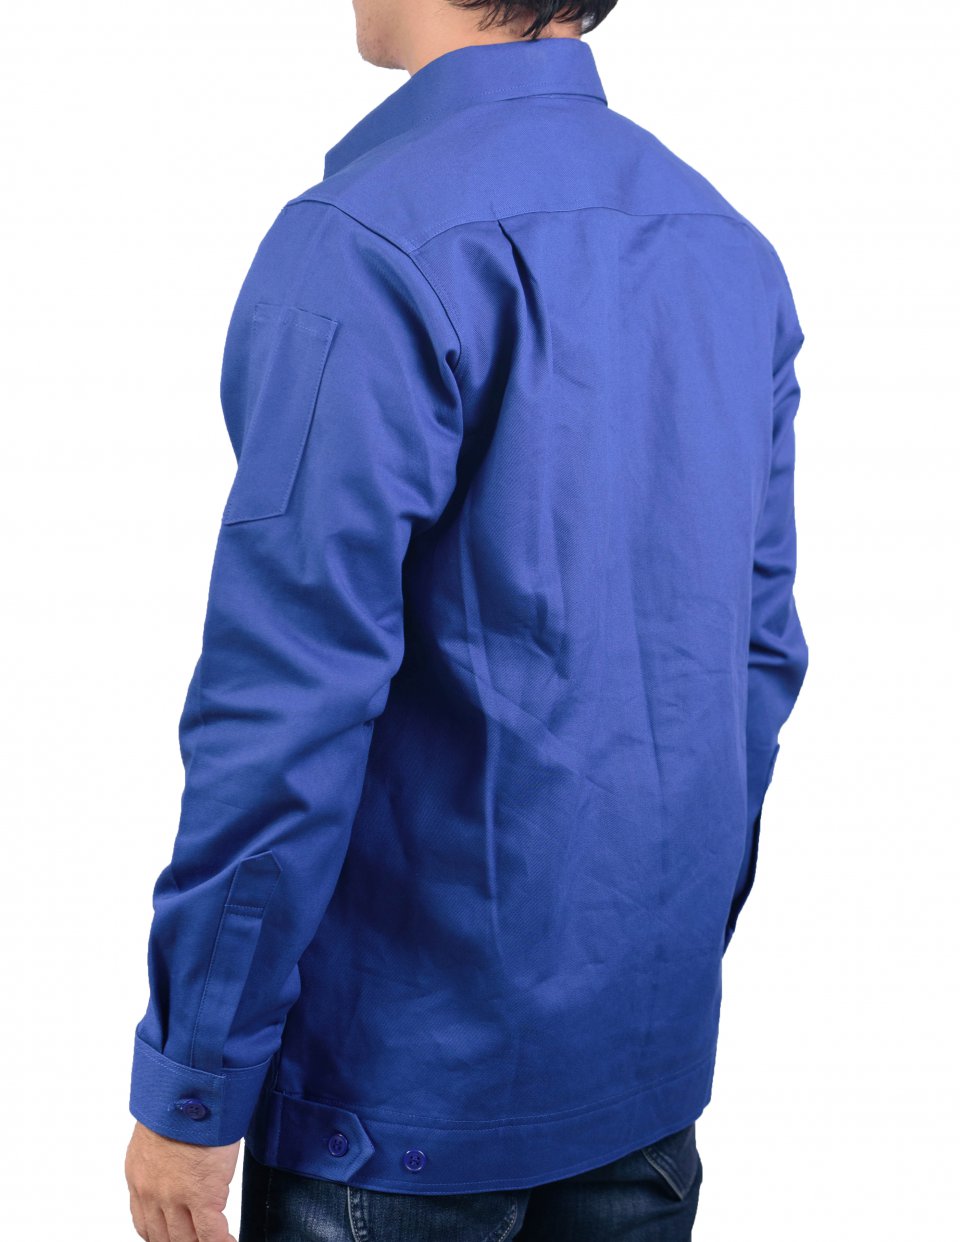 ตัวอย่างชุดพนักงานผ้าเวสป้อยท์บริษัท Assign Plus / นลินสิริโรงงานผลิตเสื้อยูนิฟอร์ม เสื้อโปโล อ.ศรีราชา จ.ชลบุรีรูปที่ 